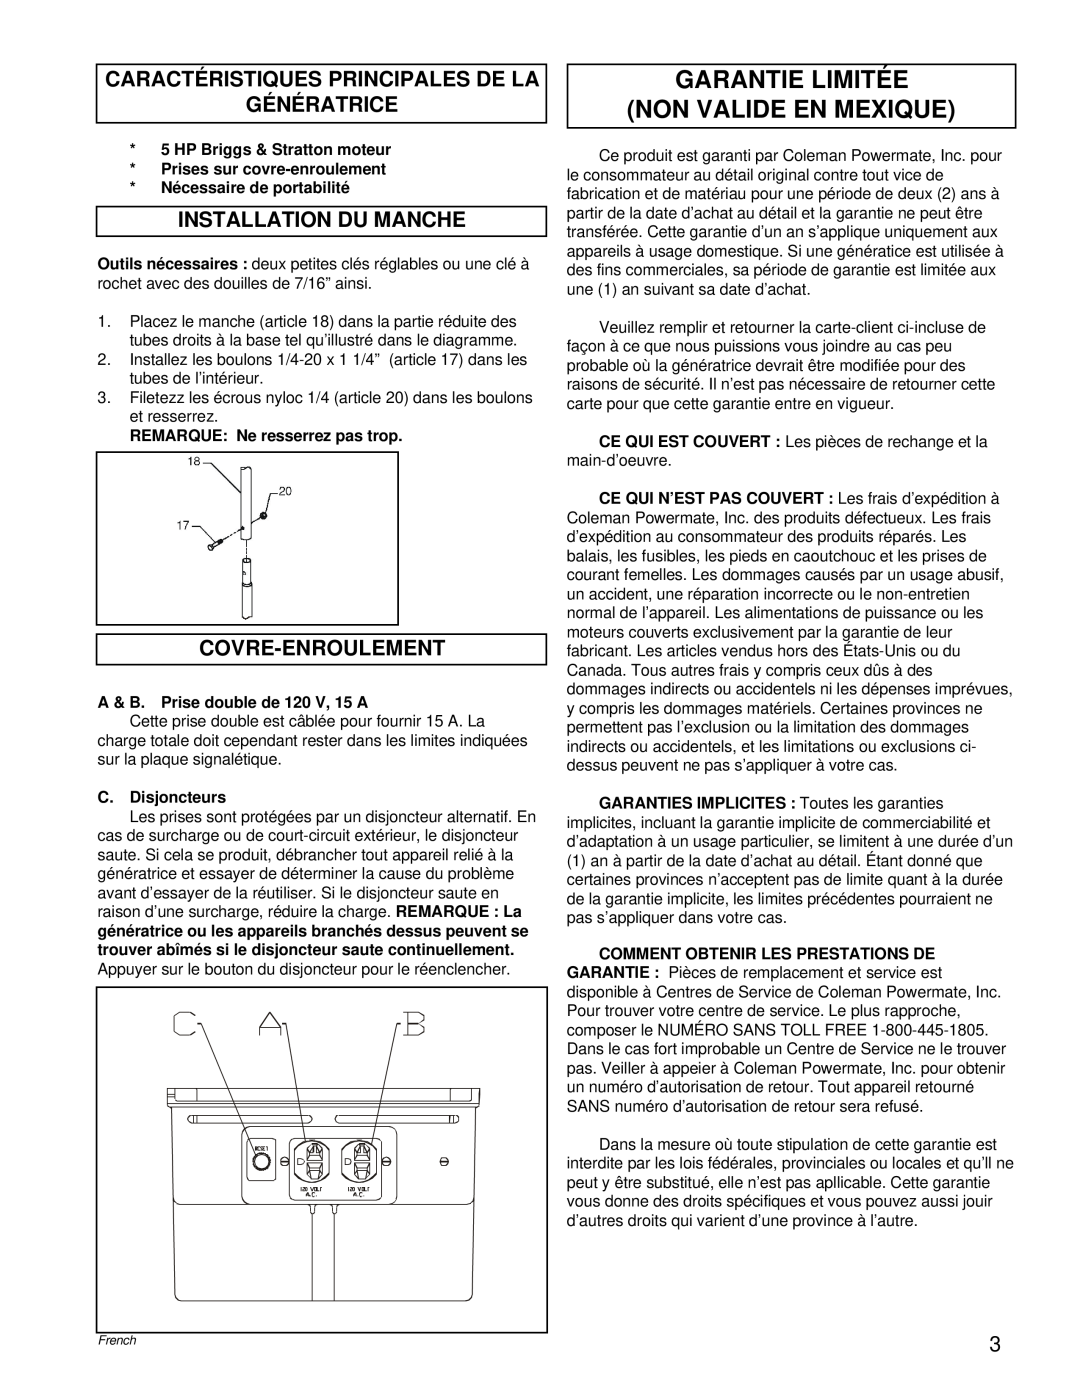 Briggs & Stratton PM0422505.02 manual Garantie Limitée Non Valide En Mexique, HP Briggs & Stratton moteur, C. Disjoncteurs 